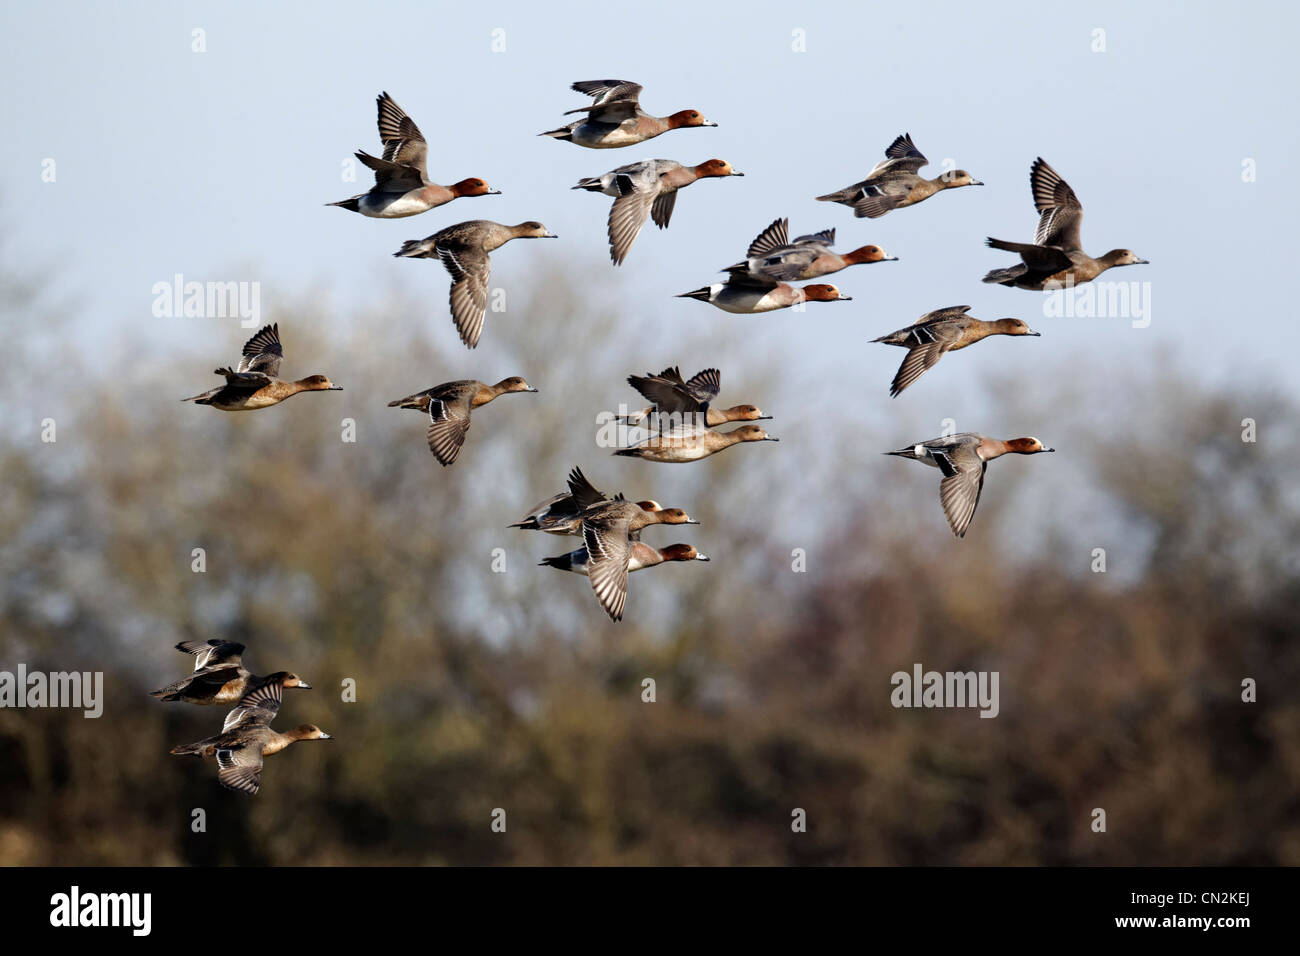 Siffleur, l'Anas penelope, groupe d'oiseaux en vol, Gloucestershire, Mars 2012 Banque D'Images